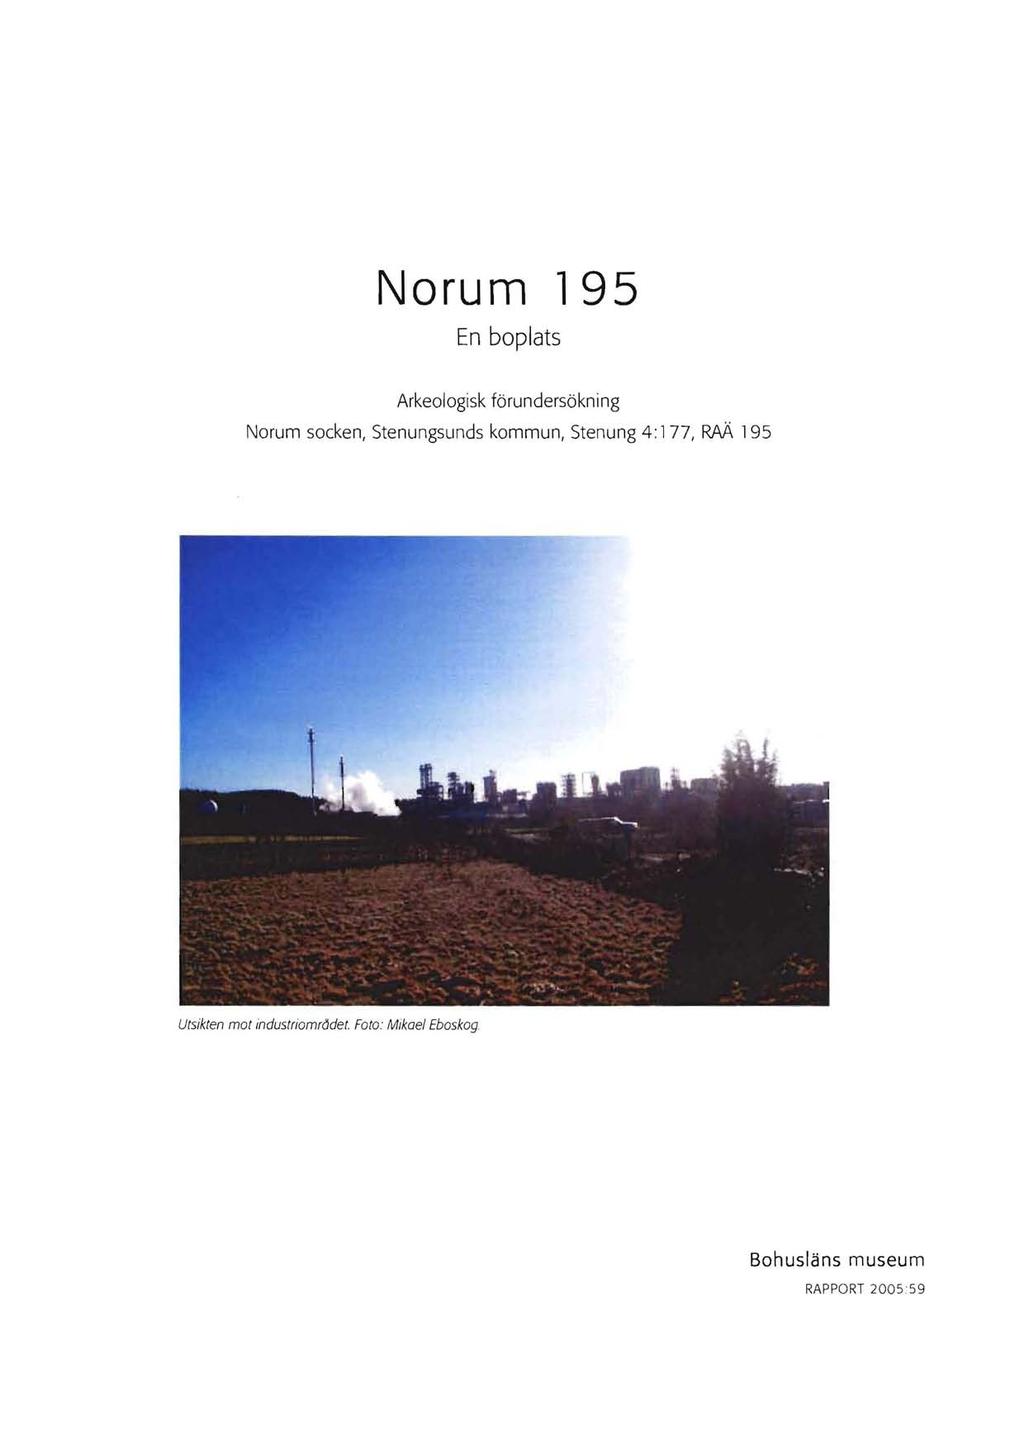 Norum 195 En boplats Arkeologisk förundersökning Norum socken, Stenungsunds kommun, Stenung 4: